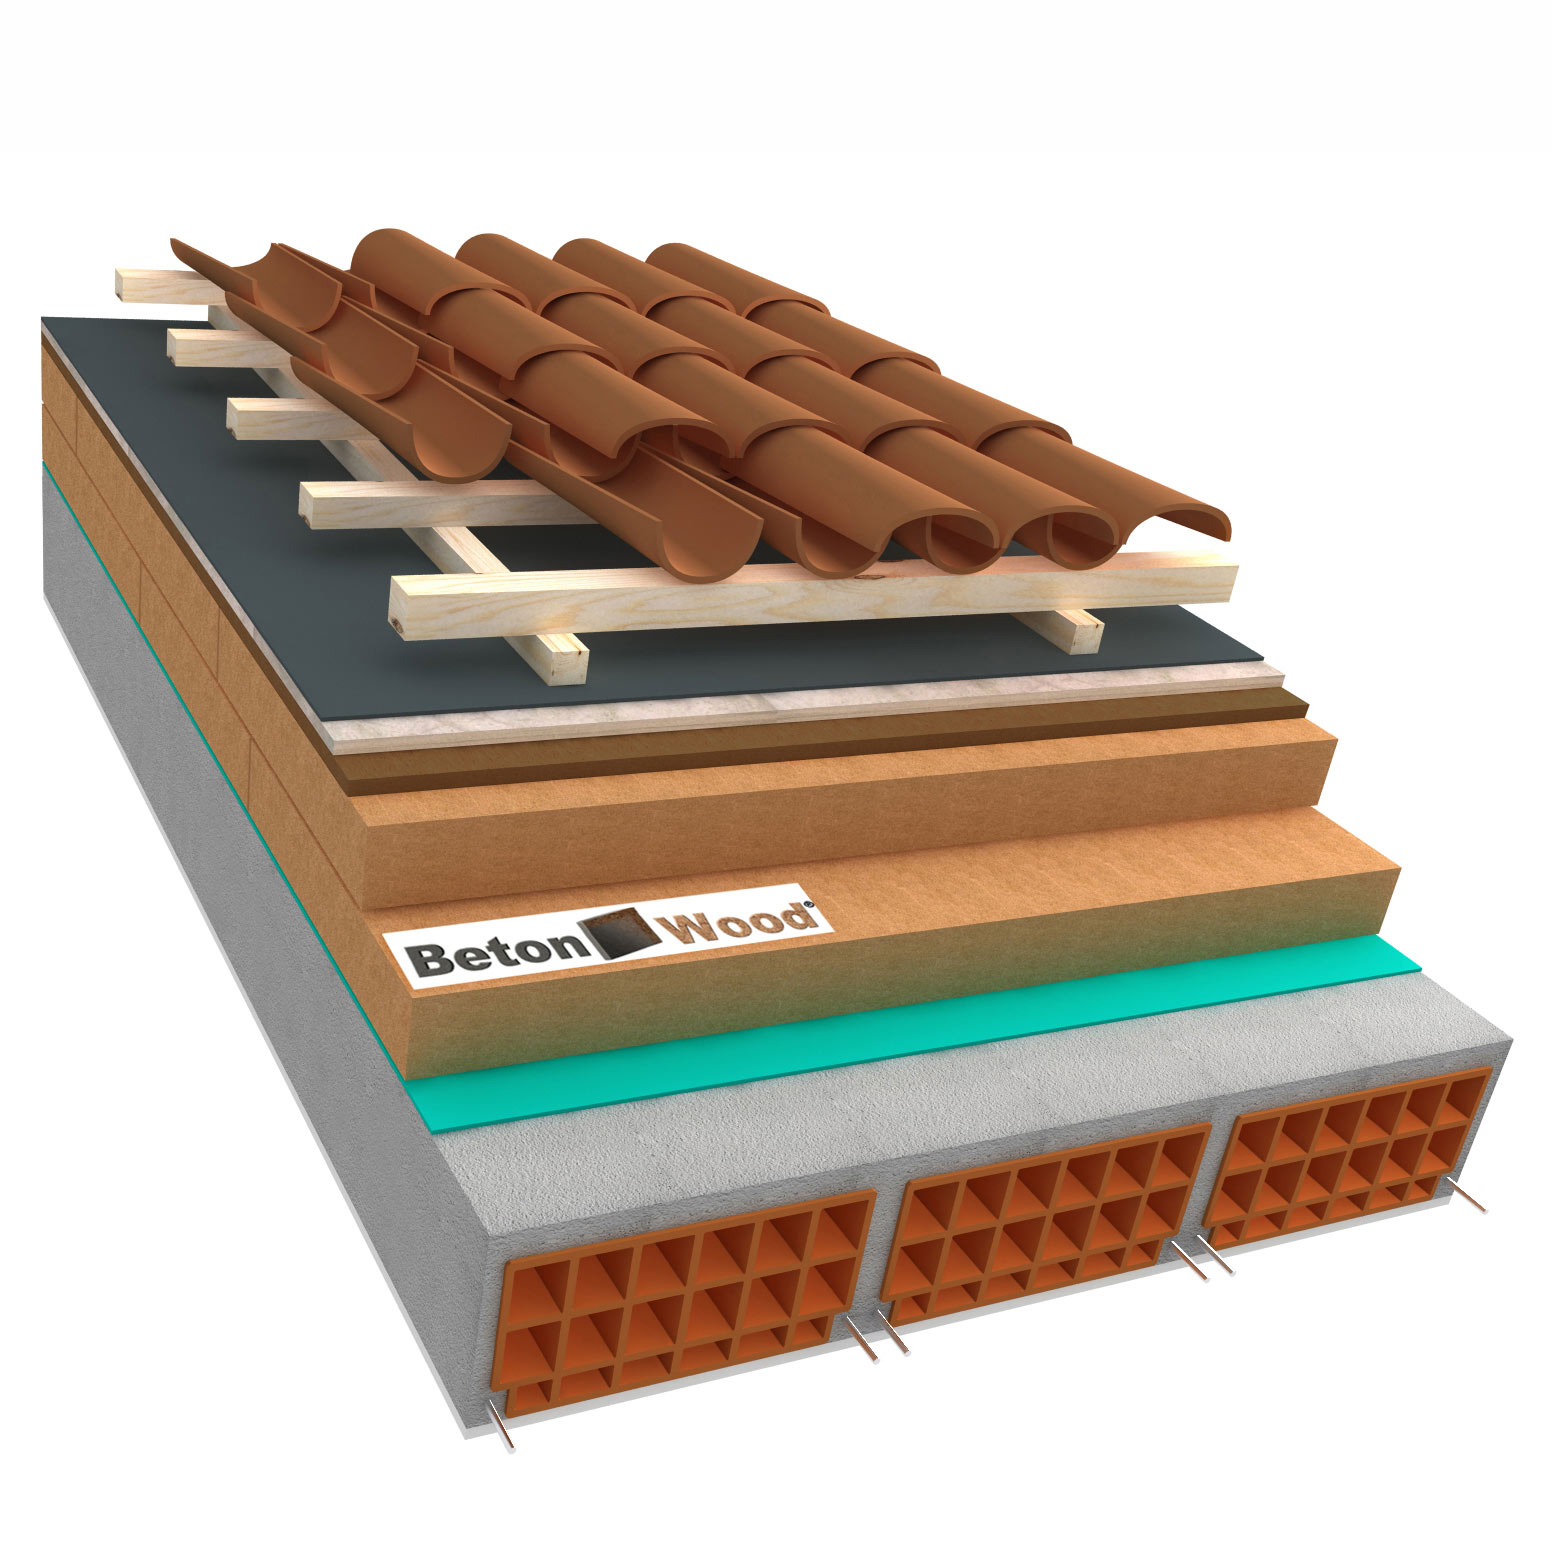 Fiber wood, Bitumfiber, BetonWood concrete roof